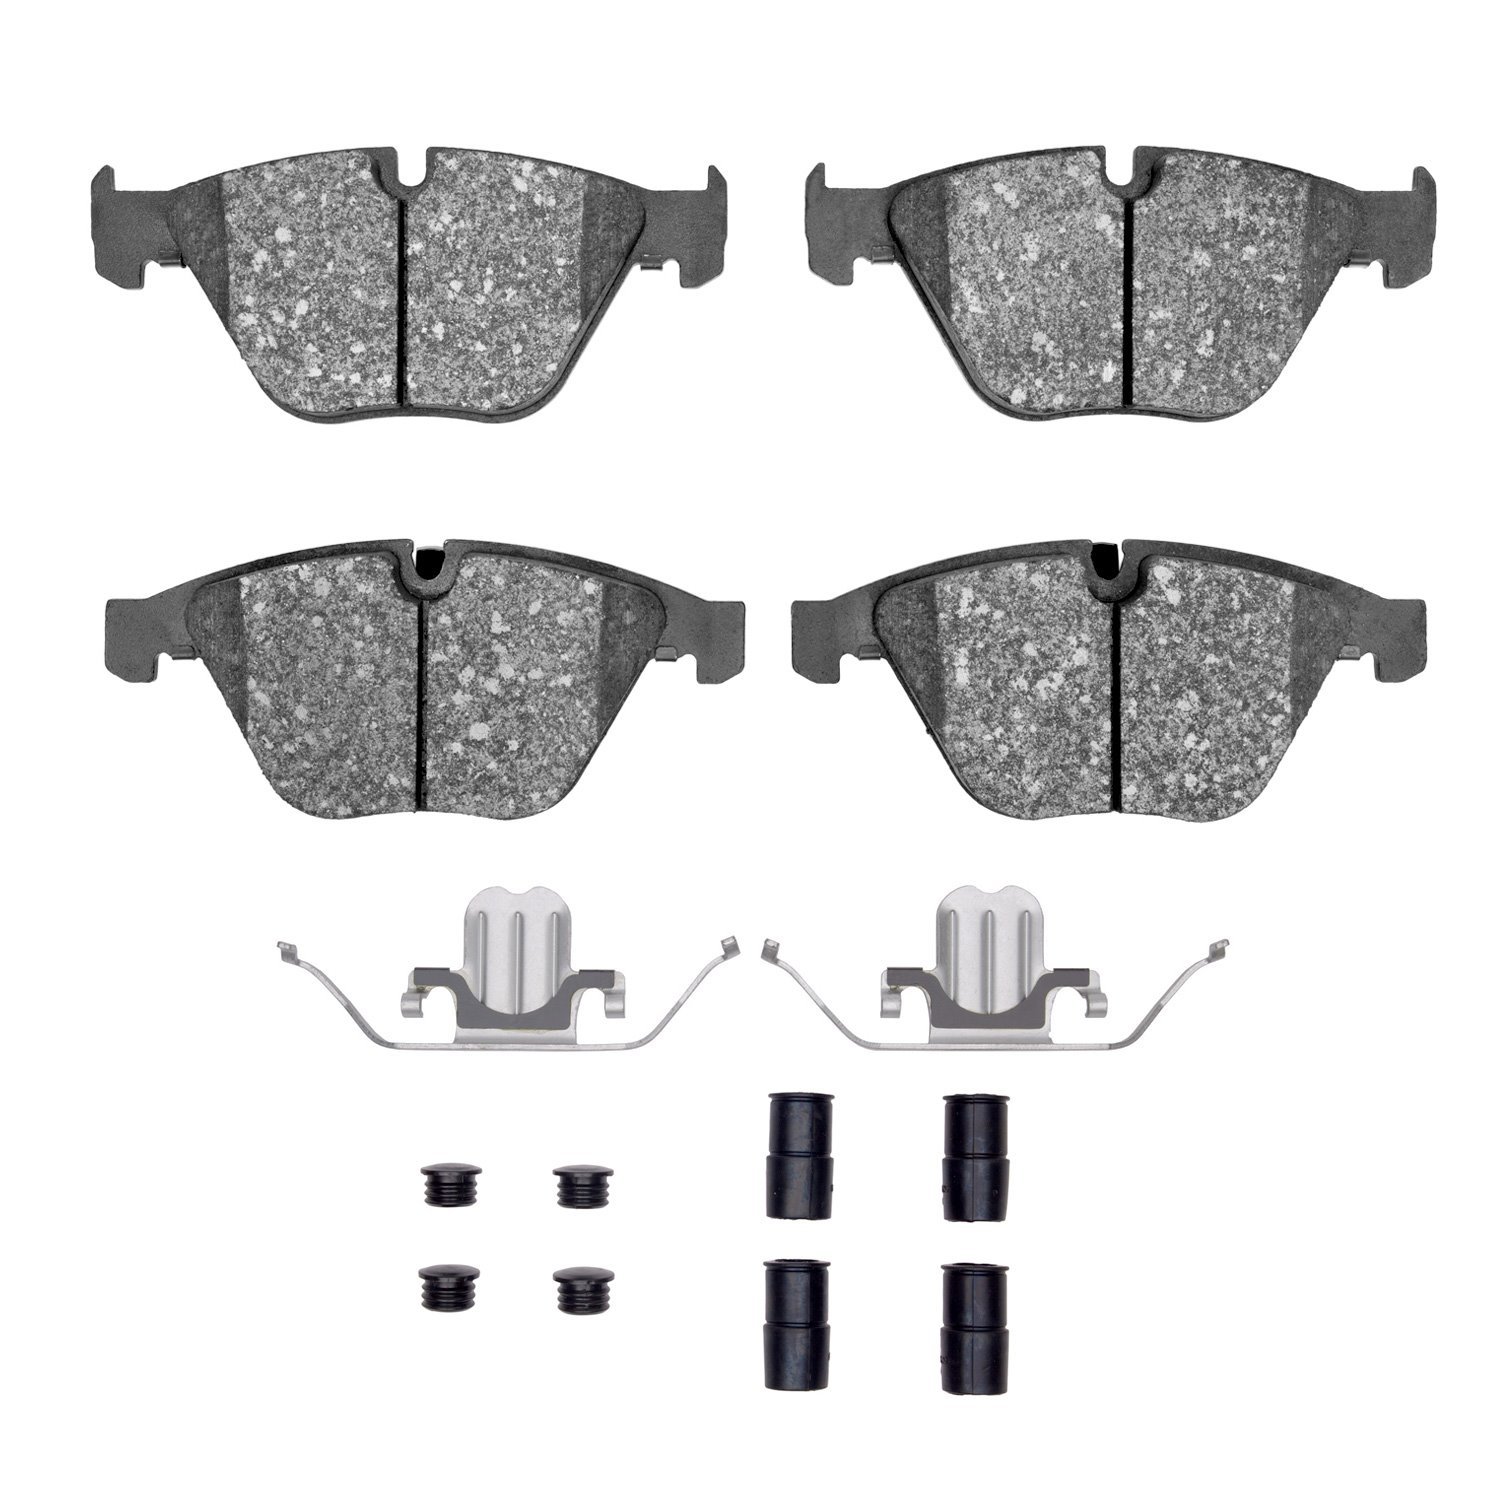 1552-1260-01 5000 Advanced Low-Metallic Brake Pads & Hardware Kit, 2008-2015 BMW, Position: Front